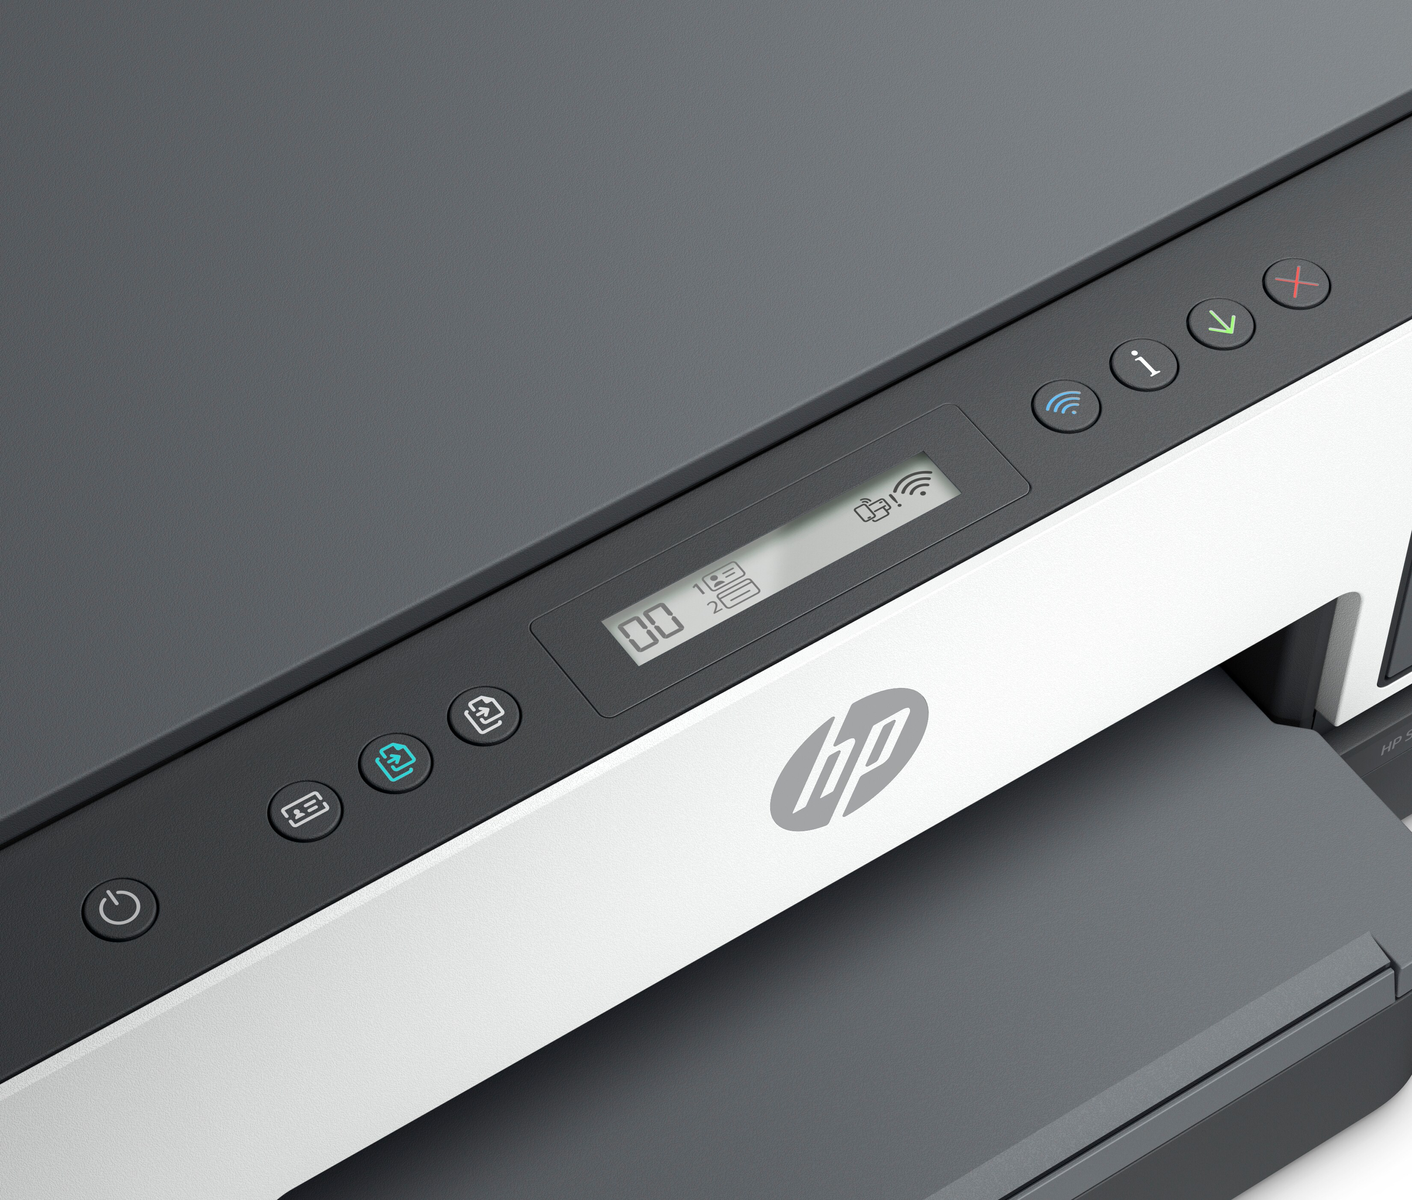 Tank Inkjet WLAN 720 Smart HP Netzwerkfähig Multifunktionsdrucker